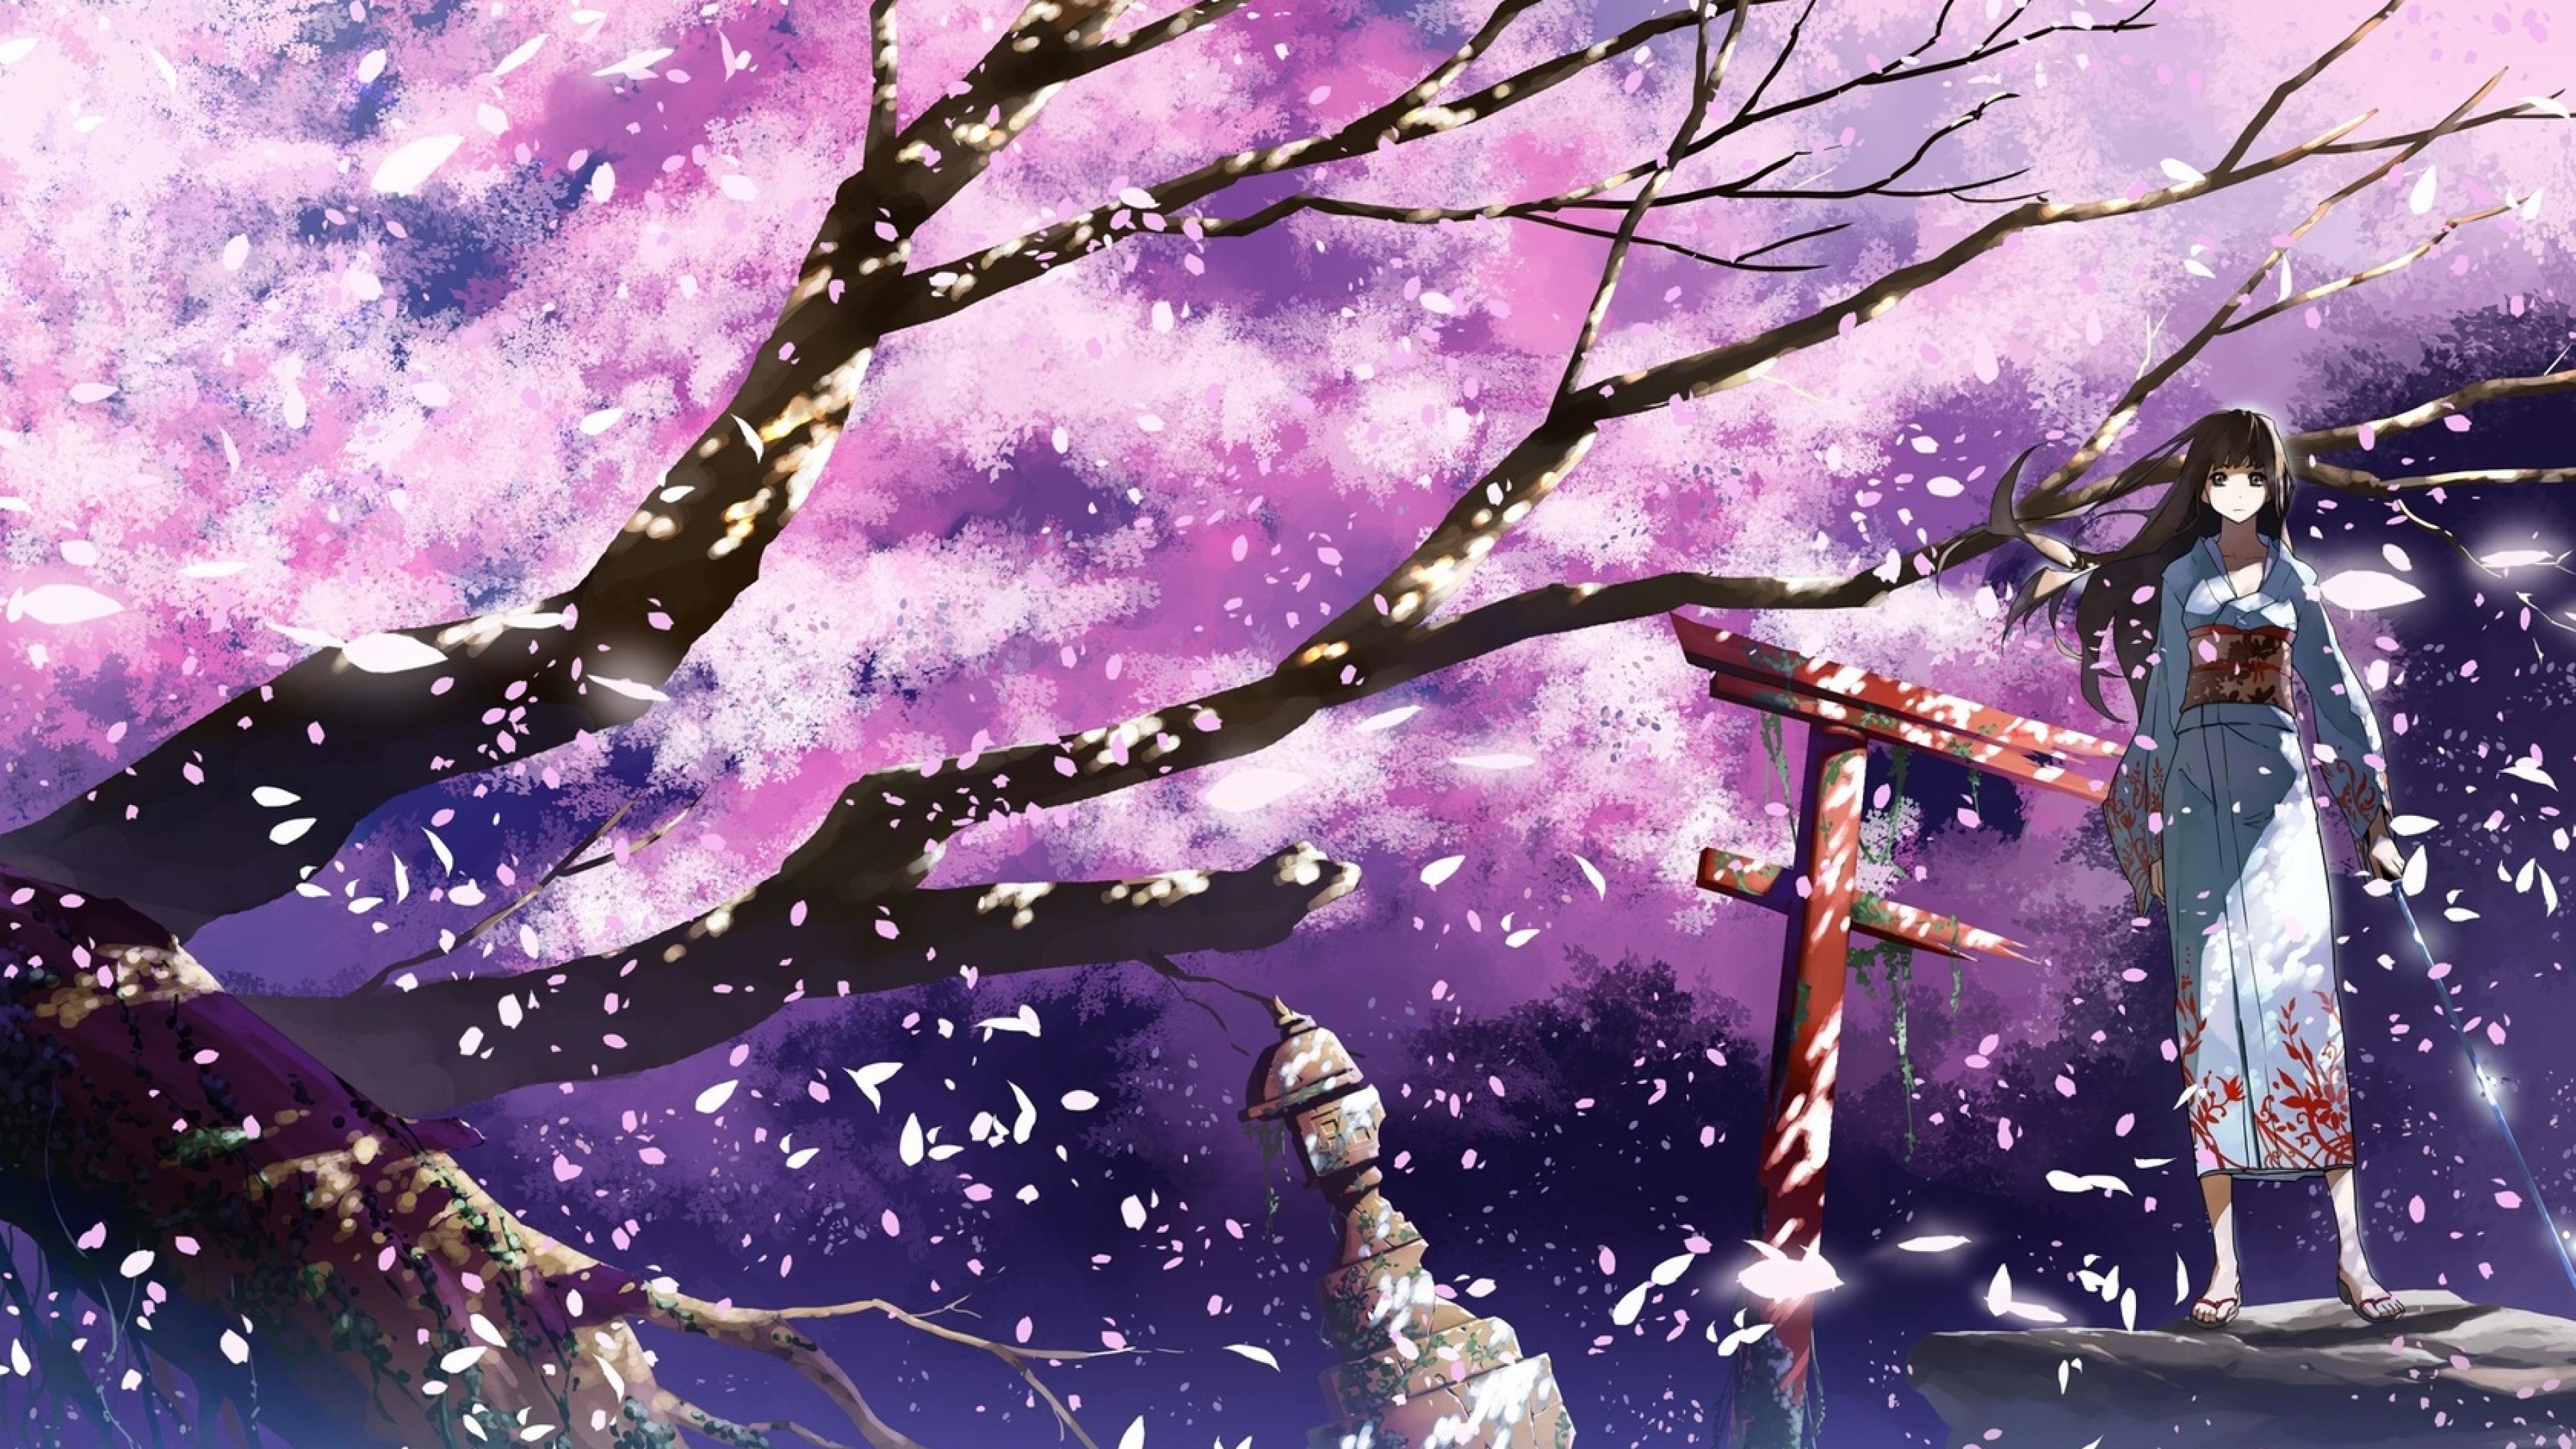 Anime Cherry Blossom